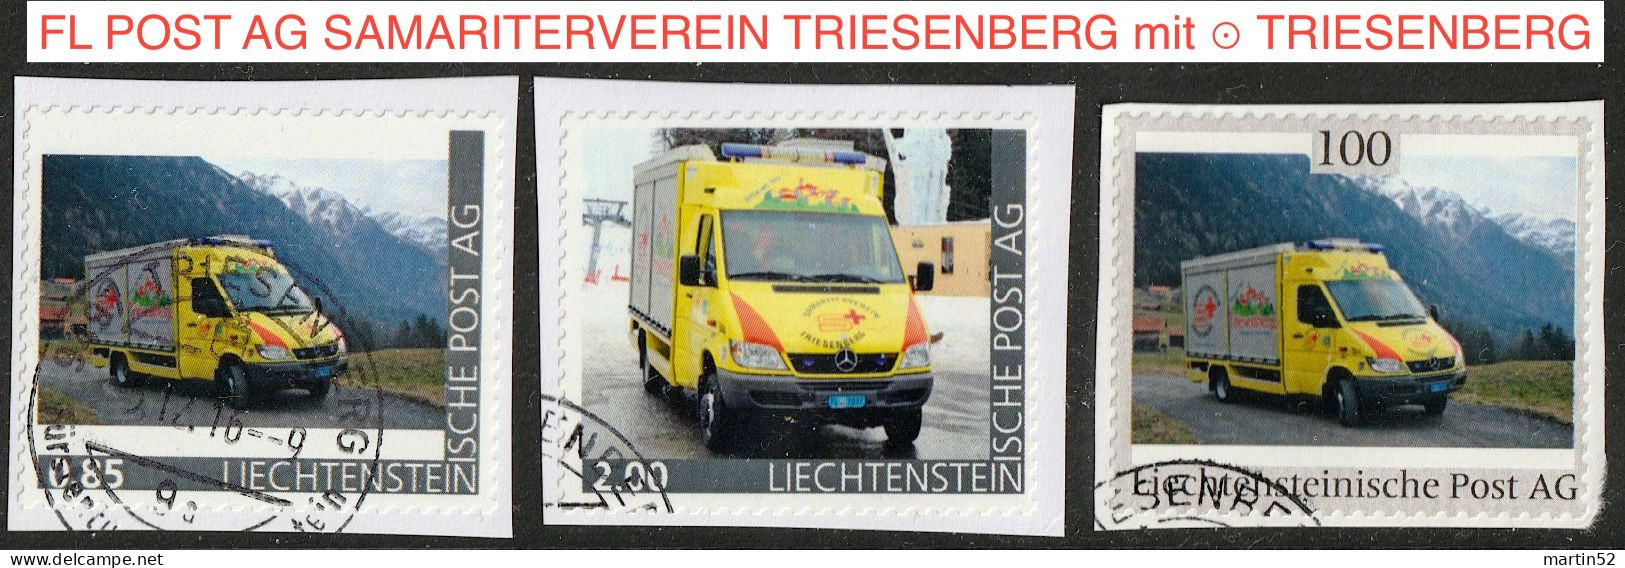 Liechtenstein 2016: Ausgabe Der FL POST AG "SAMARITERVEREIN TRIESENBERG" (Rettungs-Bus) Mit ⊙ Von TRIESENBERG - Abarten